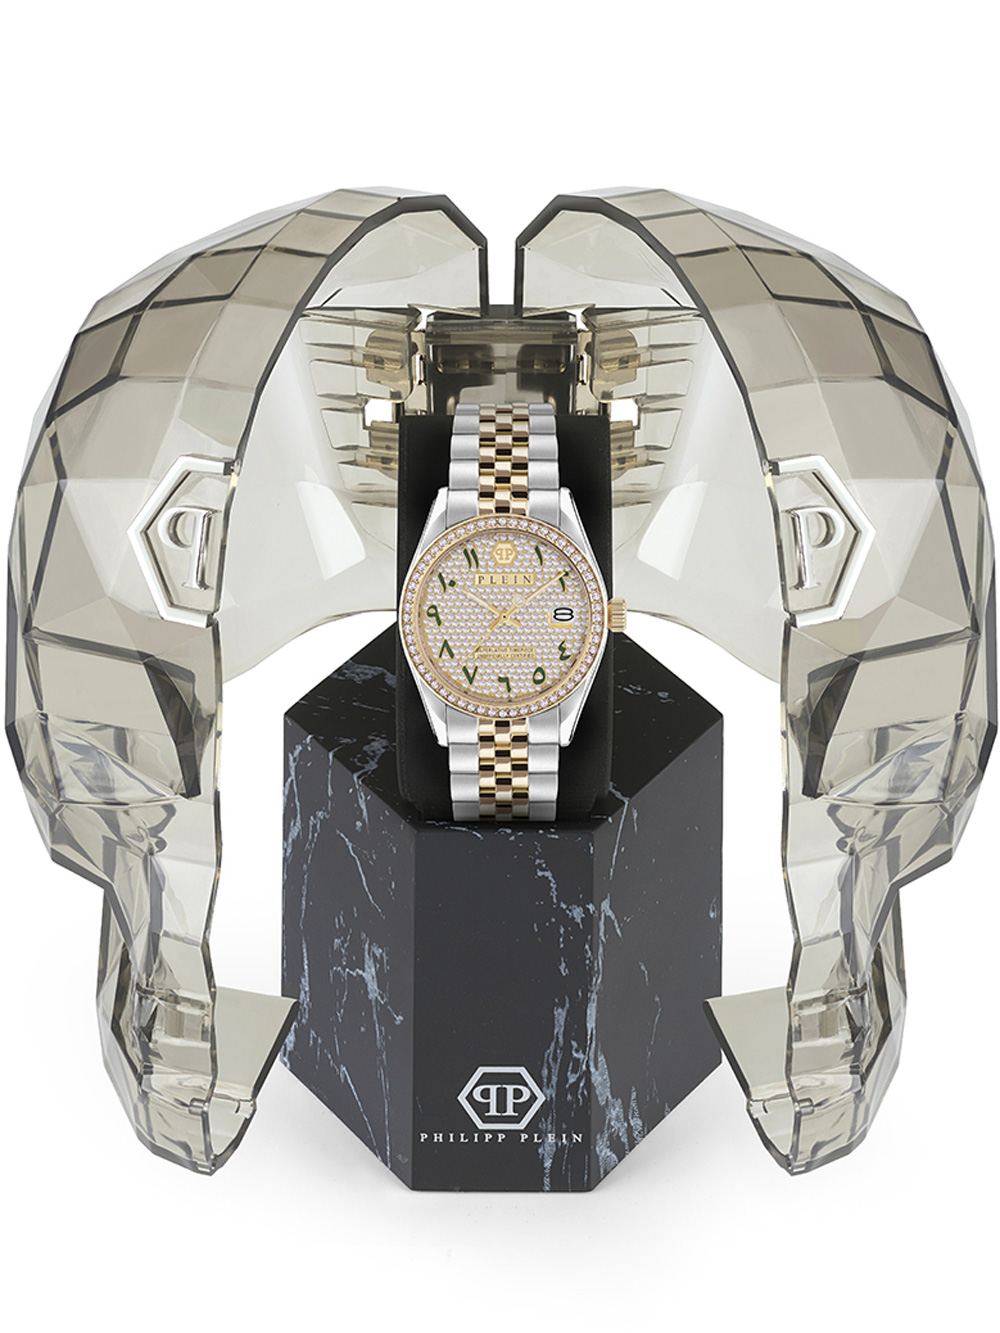 Zegarek damski Philipp Plein PWYAA0823 Street Couture złoty